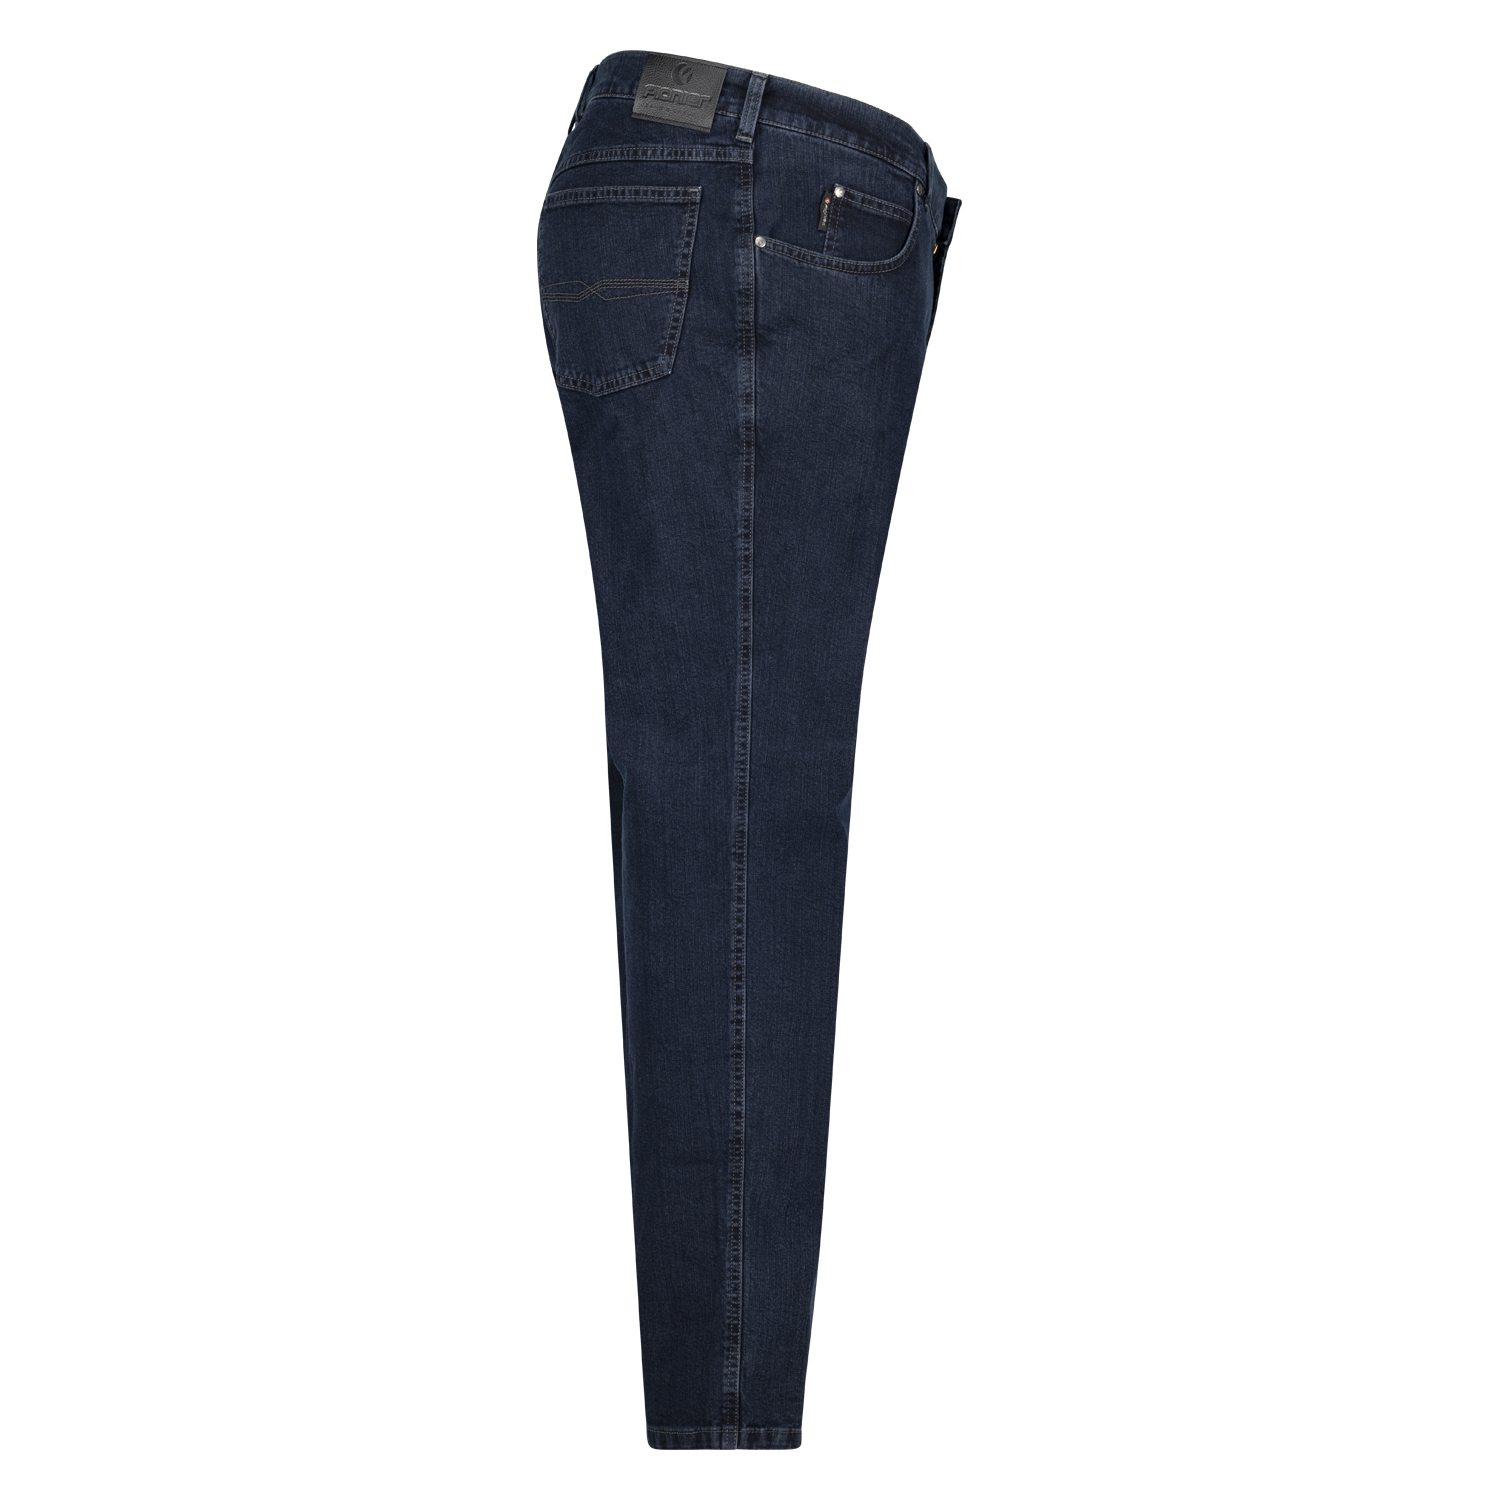 5-Pocket Jeans untersetzte Größen Modell "Peter" von Pioneer in 28 - 40 dark blue stonewash